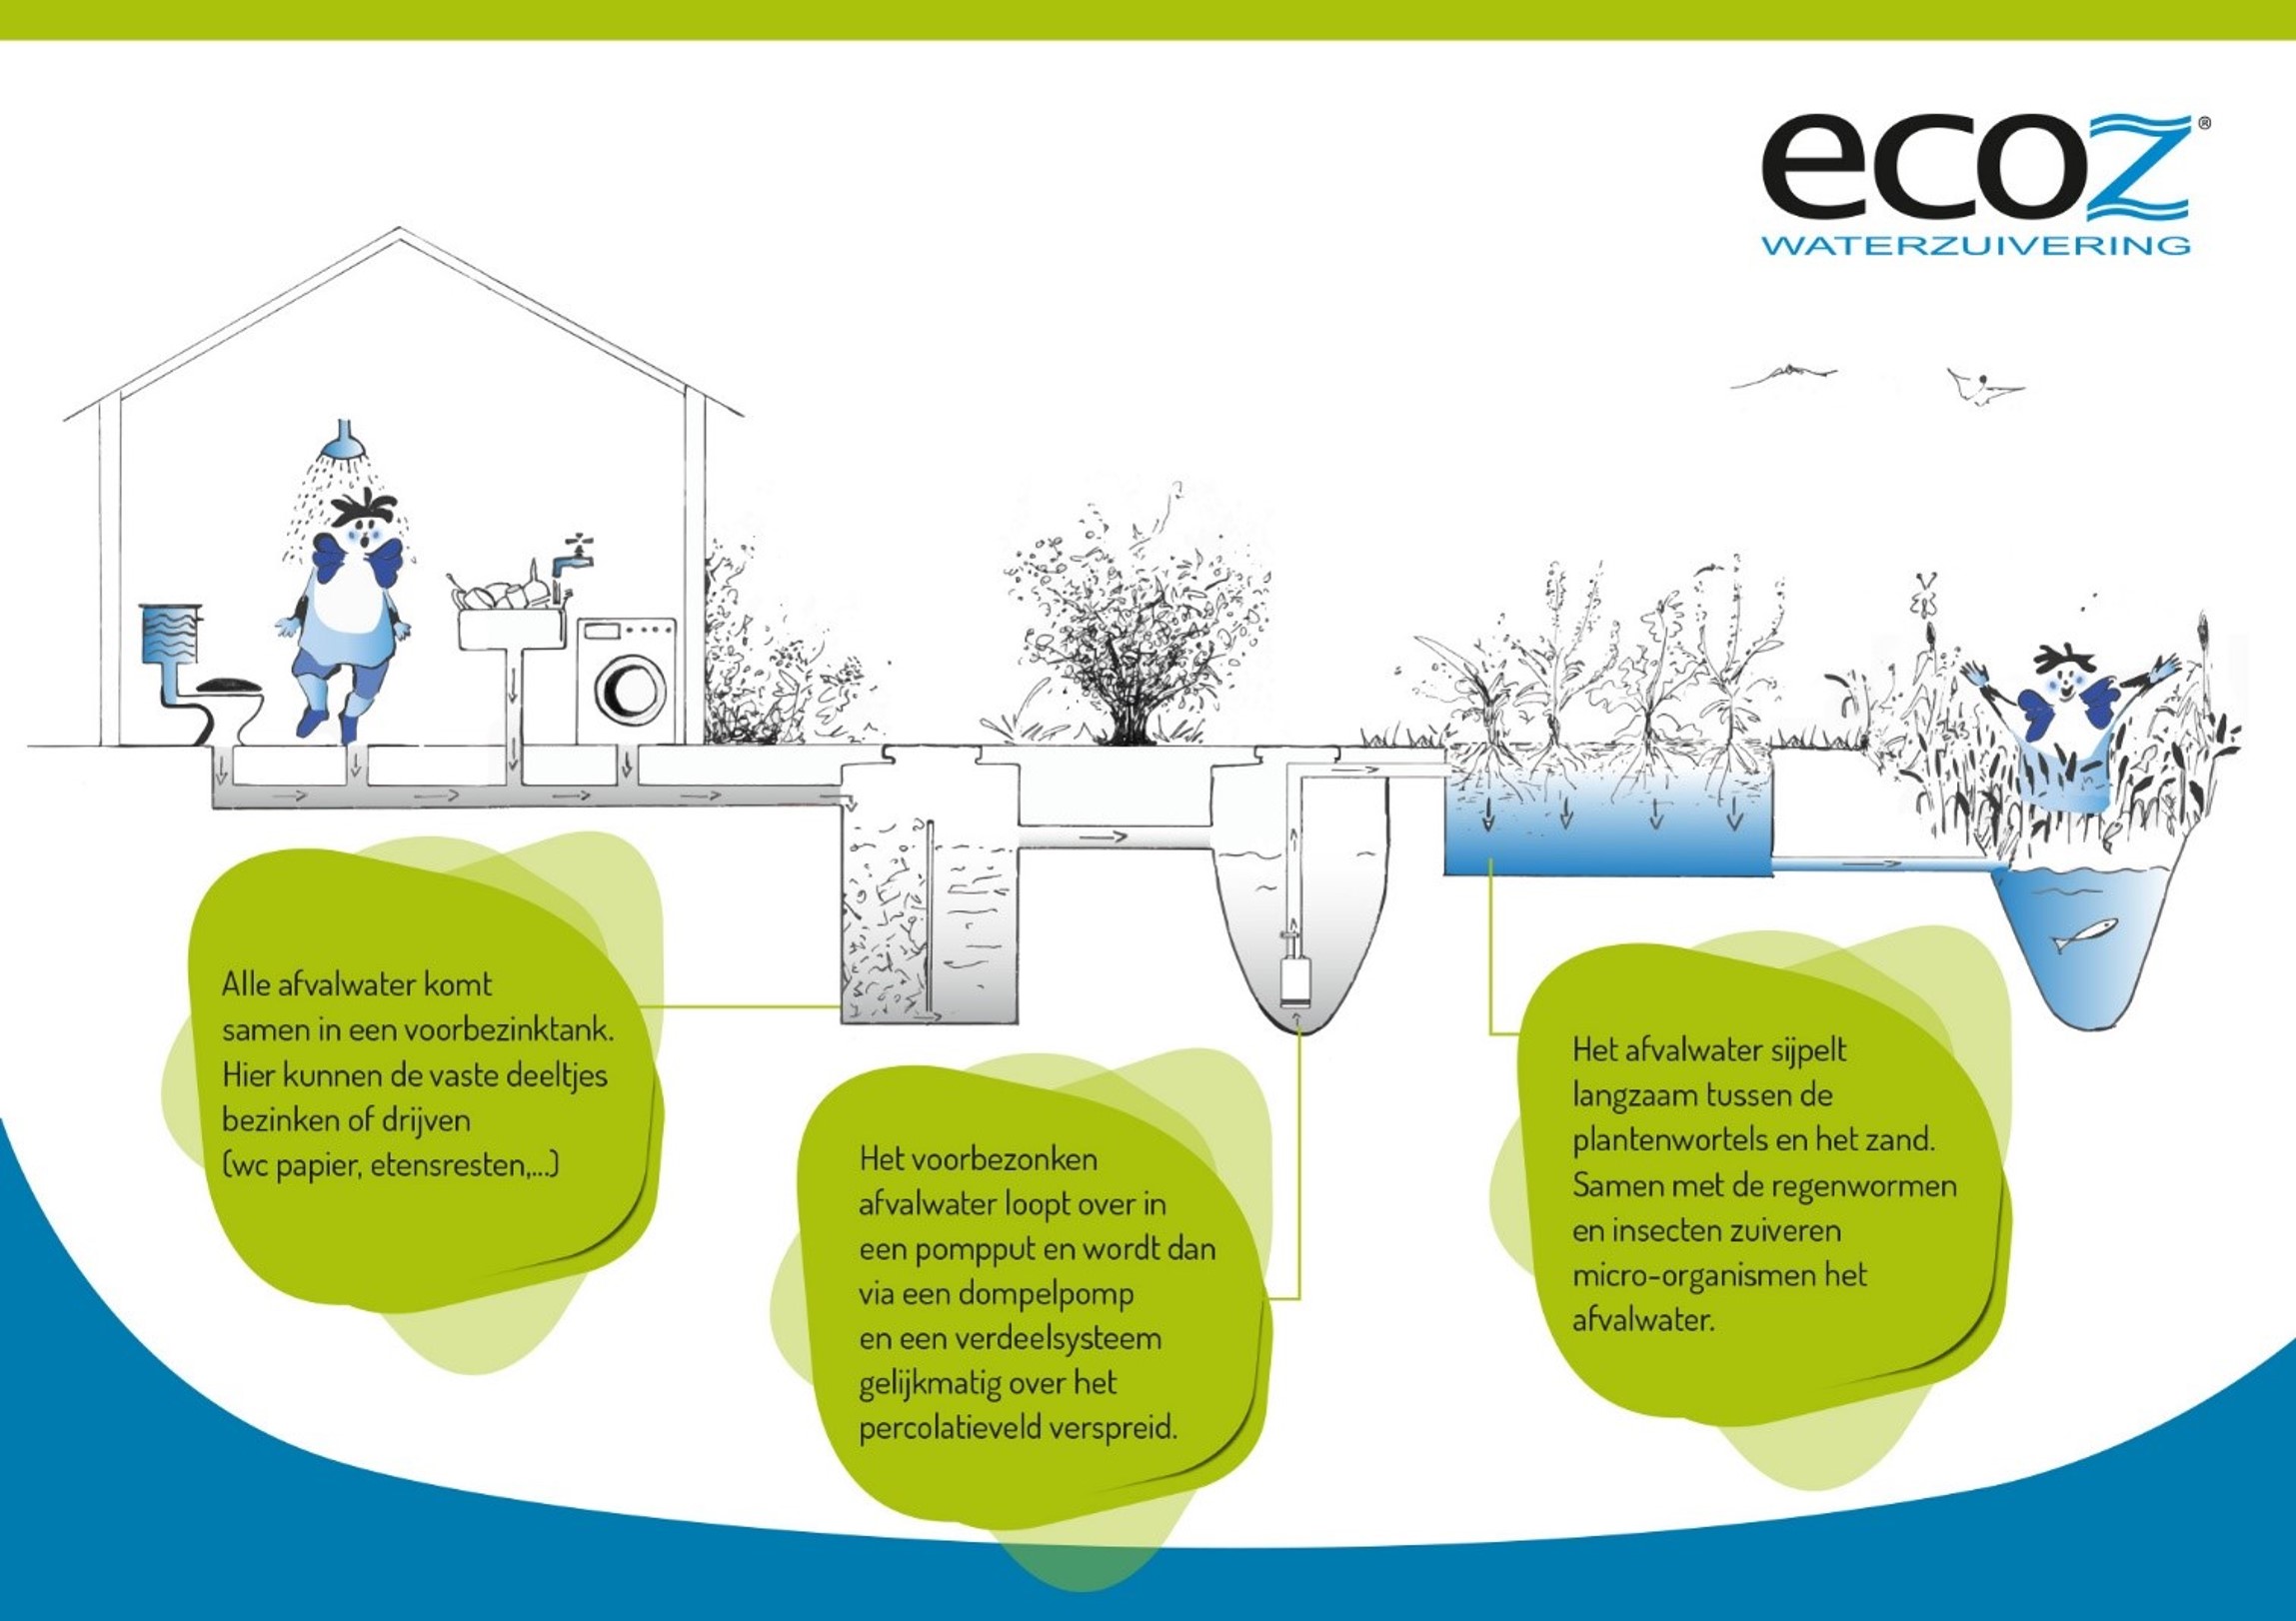 ECOZ systeem bio-ecologisch percolatieveld